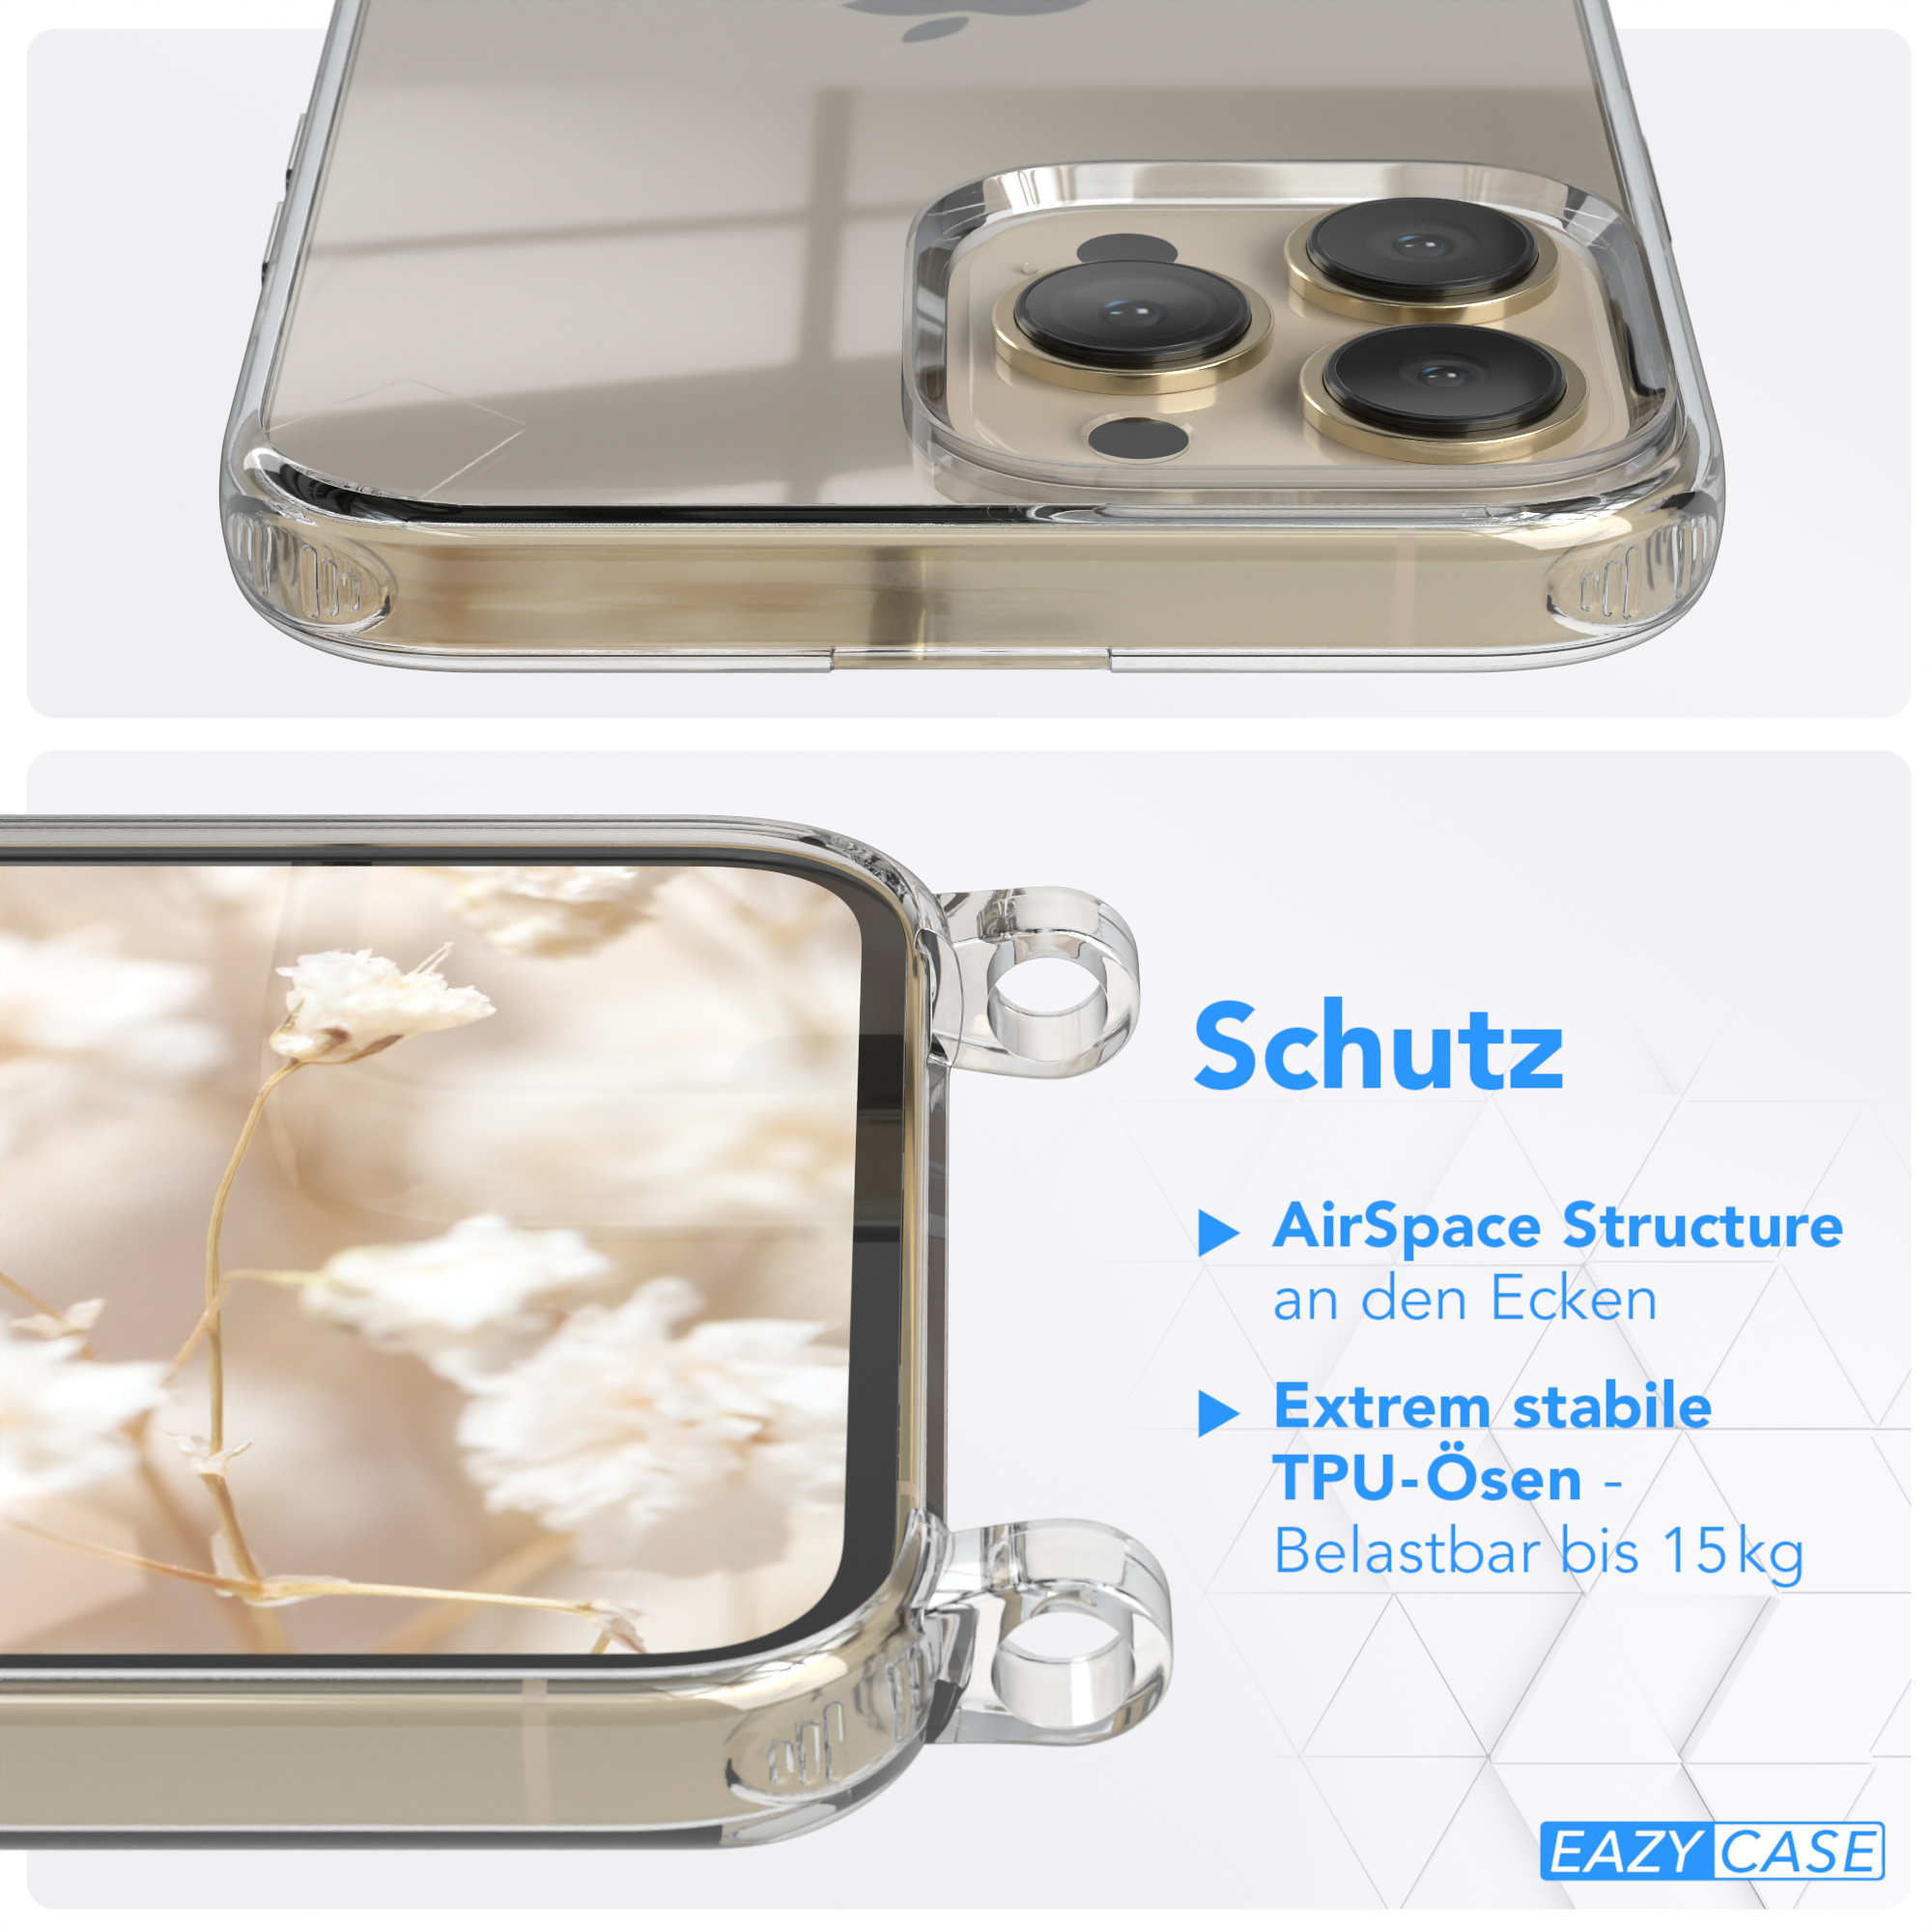 Weiß CASE Handyhülle Umhängetasche, Apple, Max, / Transparente EAZY Boho 13 Pro Kordel Style, iPhone mit Blau